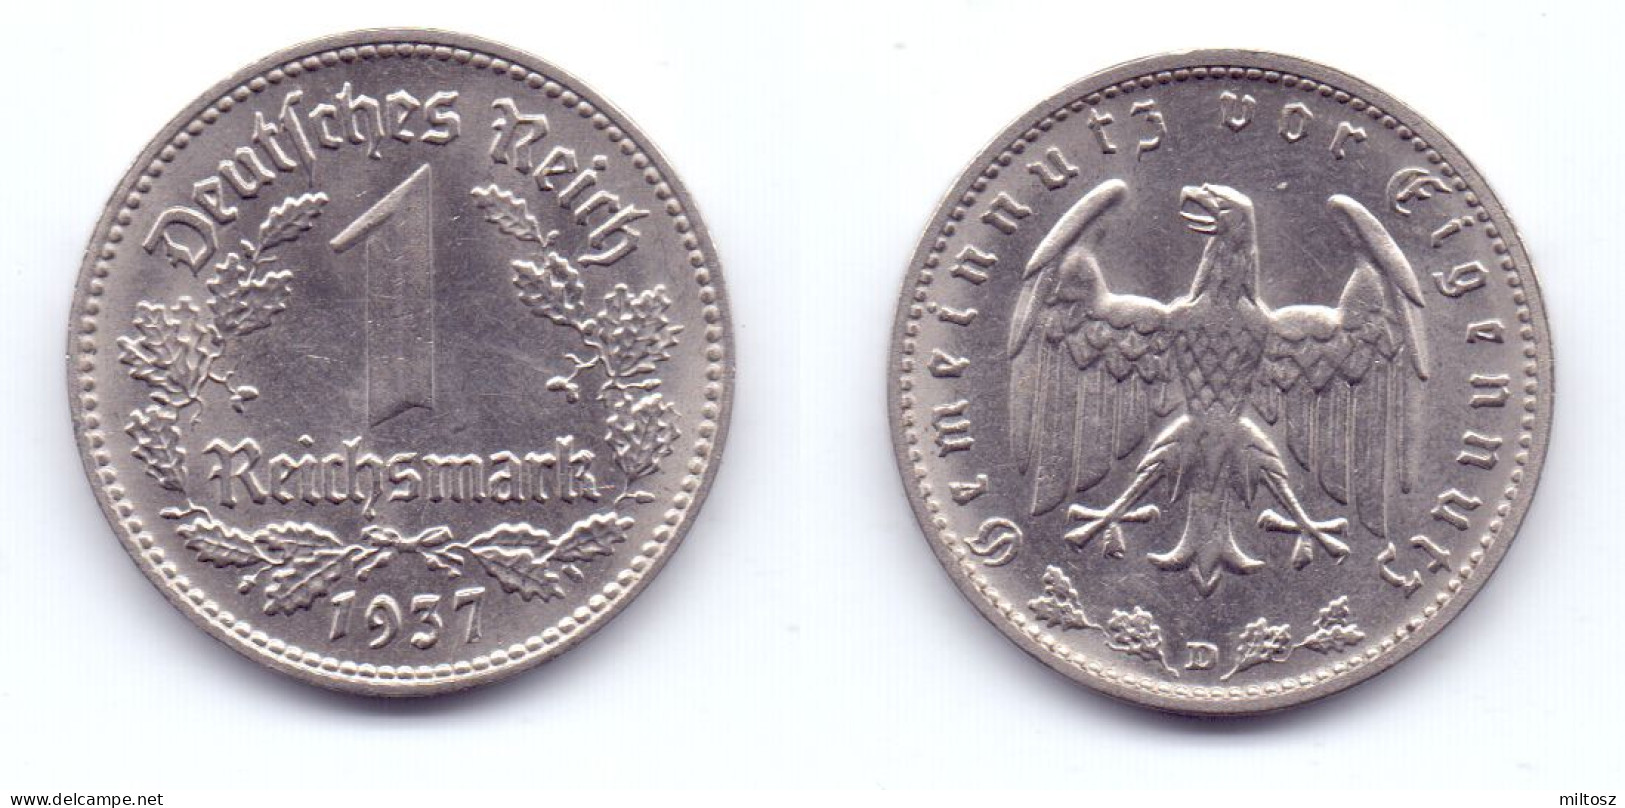 Germany 1 Reichsmark 1937 D - 1 Reichsmark